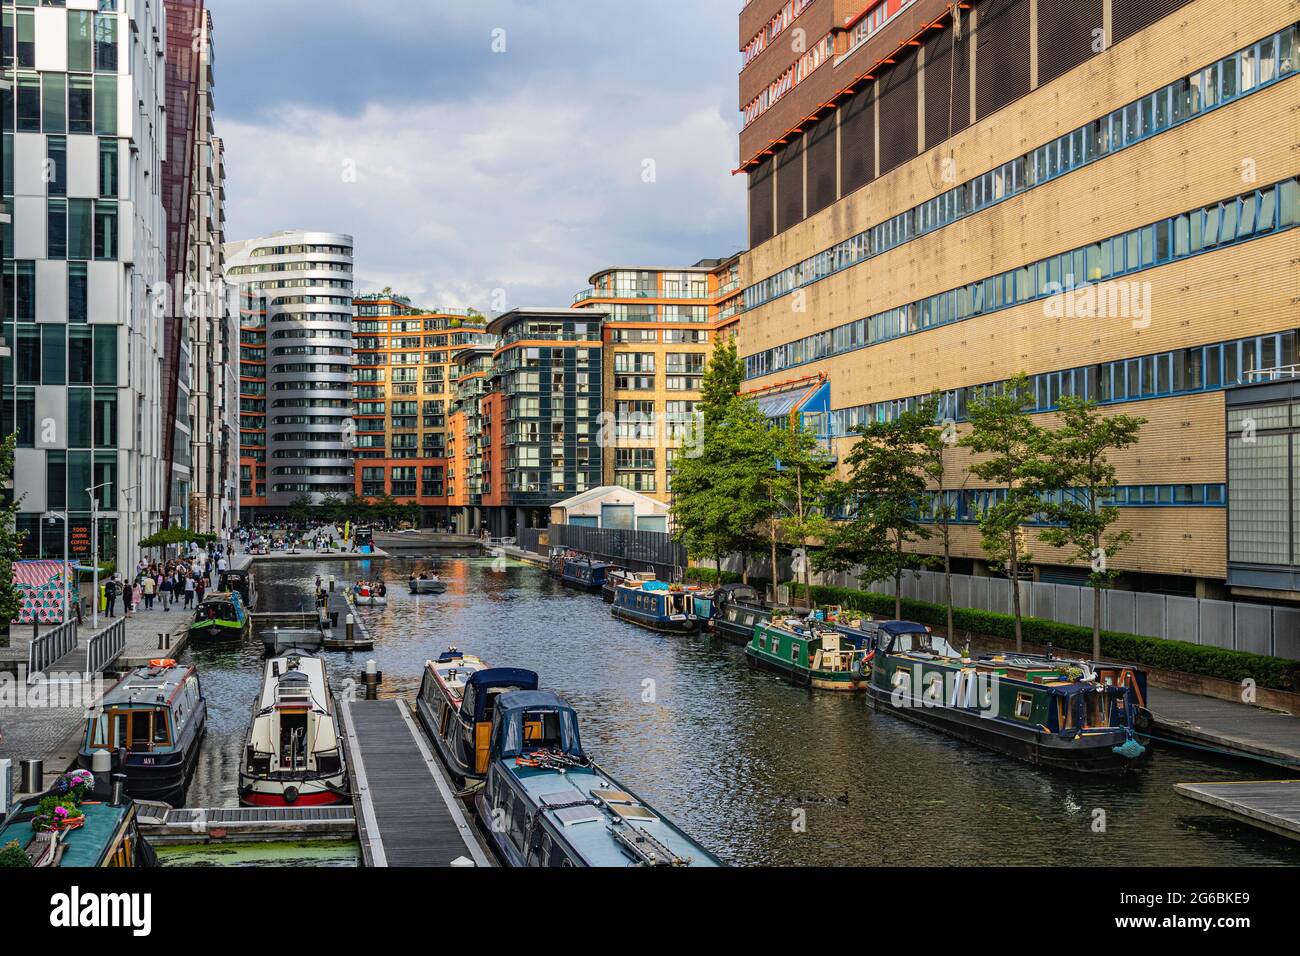 Farbenfrohe, actionreiche Aussicht auf ein geschäftiges Paddington Basin mit festgetäuten Bargen Happy People und zeitgenössischen Gebäuden #2. Stockfoto